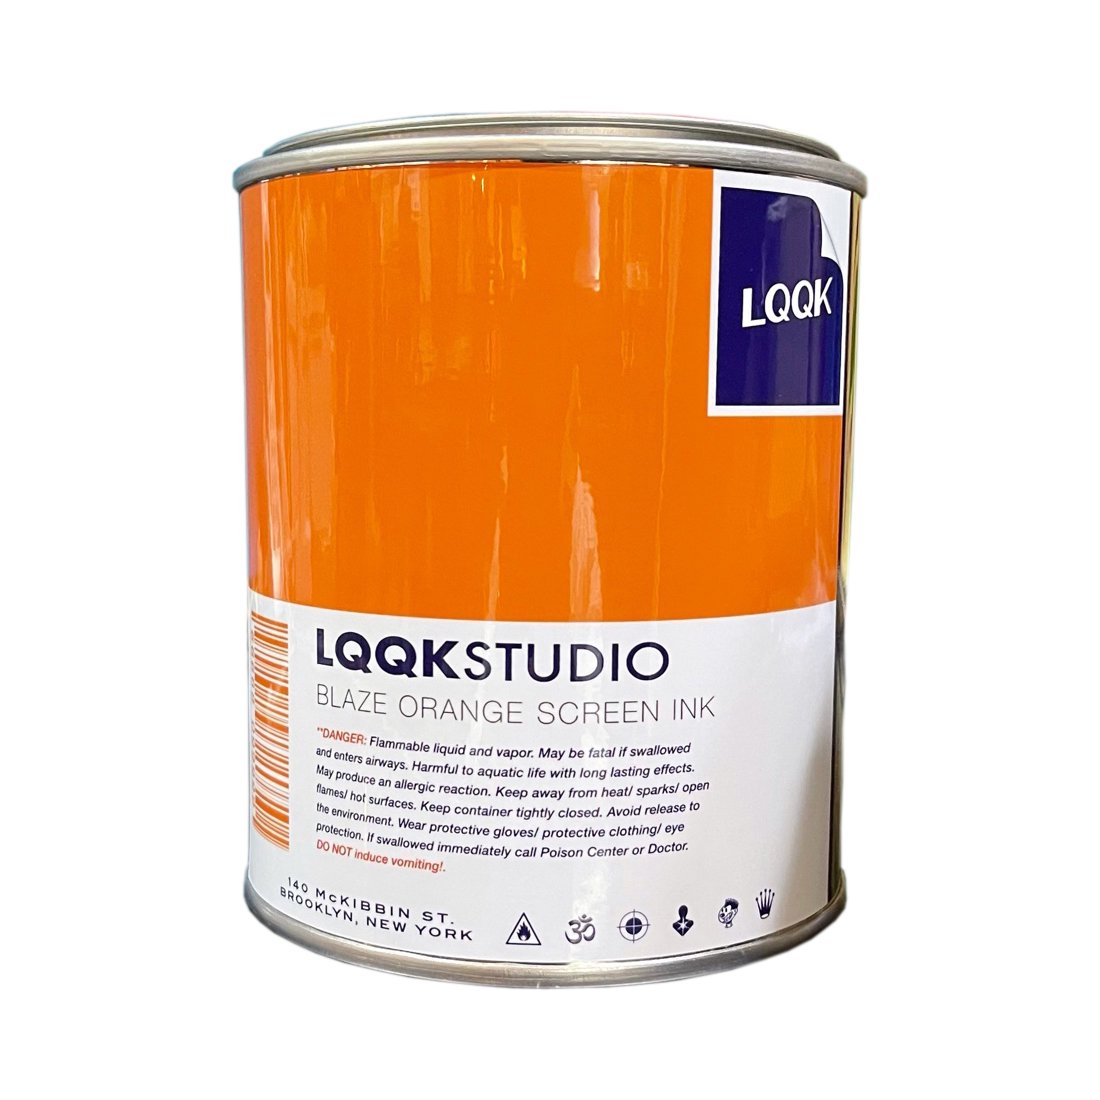 LQQK STUDIO/CANDLE